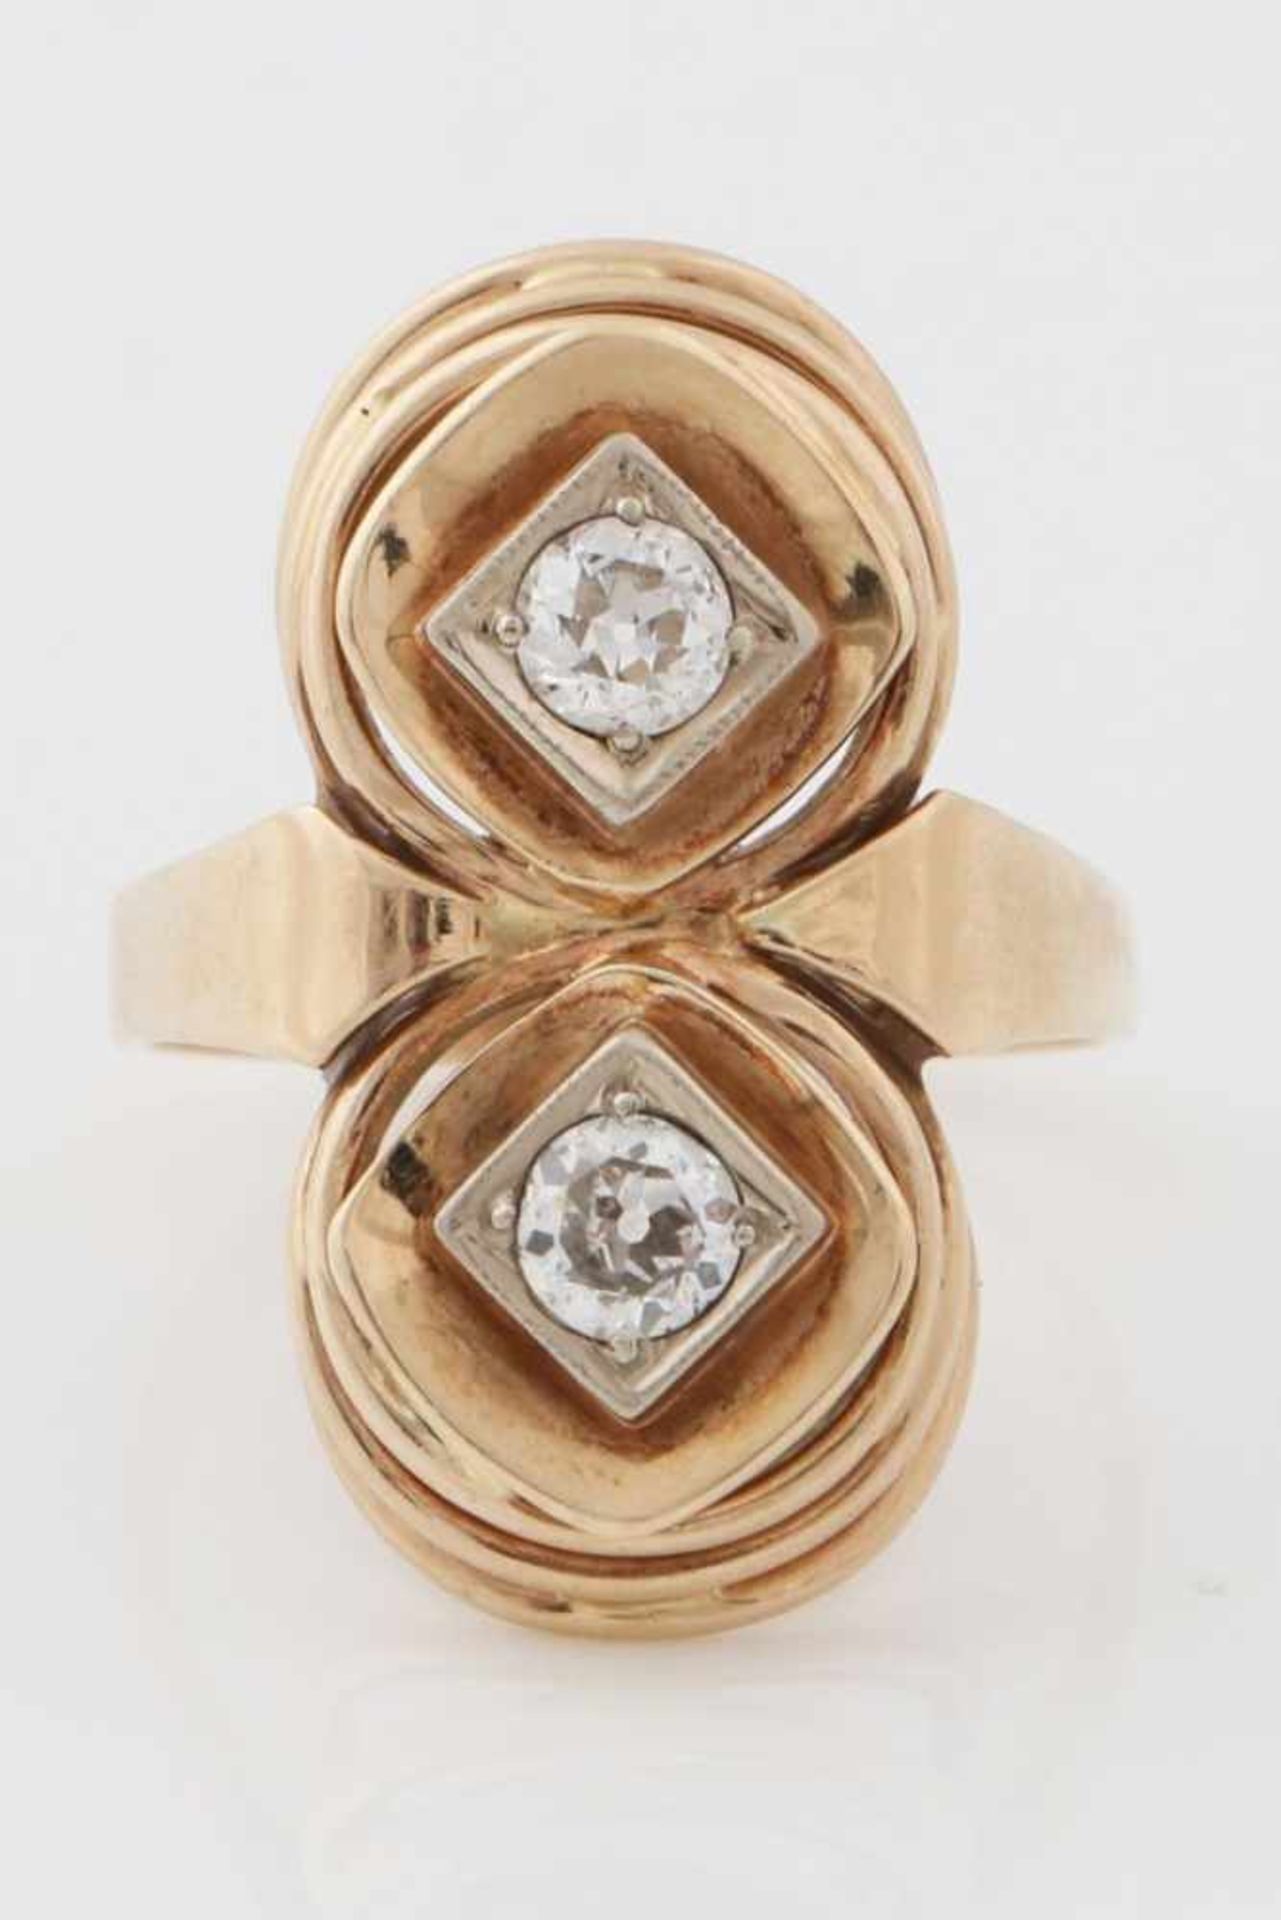 Diamantring585er Gelbgold, 2 Diamanten im Altschliff (à ca. 0,25ct.) in runder Fassung, um 1930, - Bild 2 aus 2